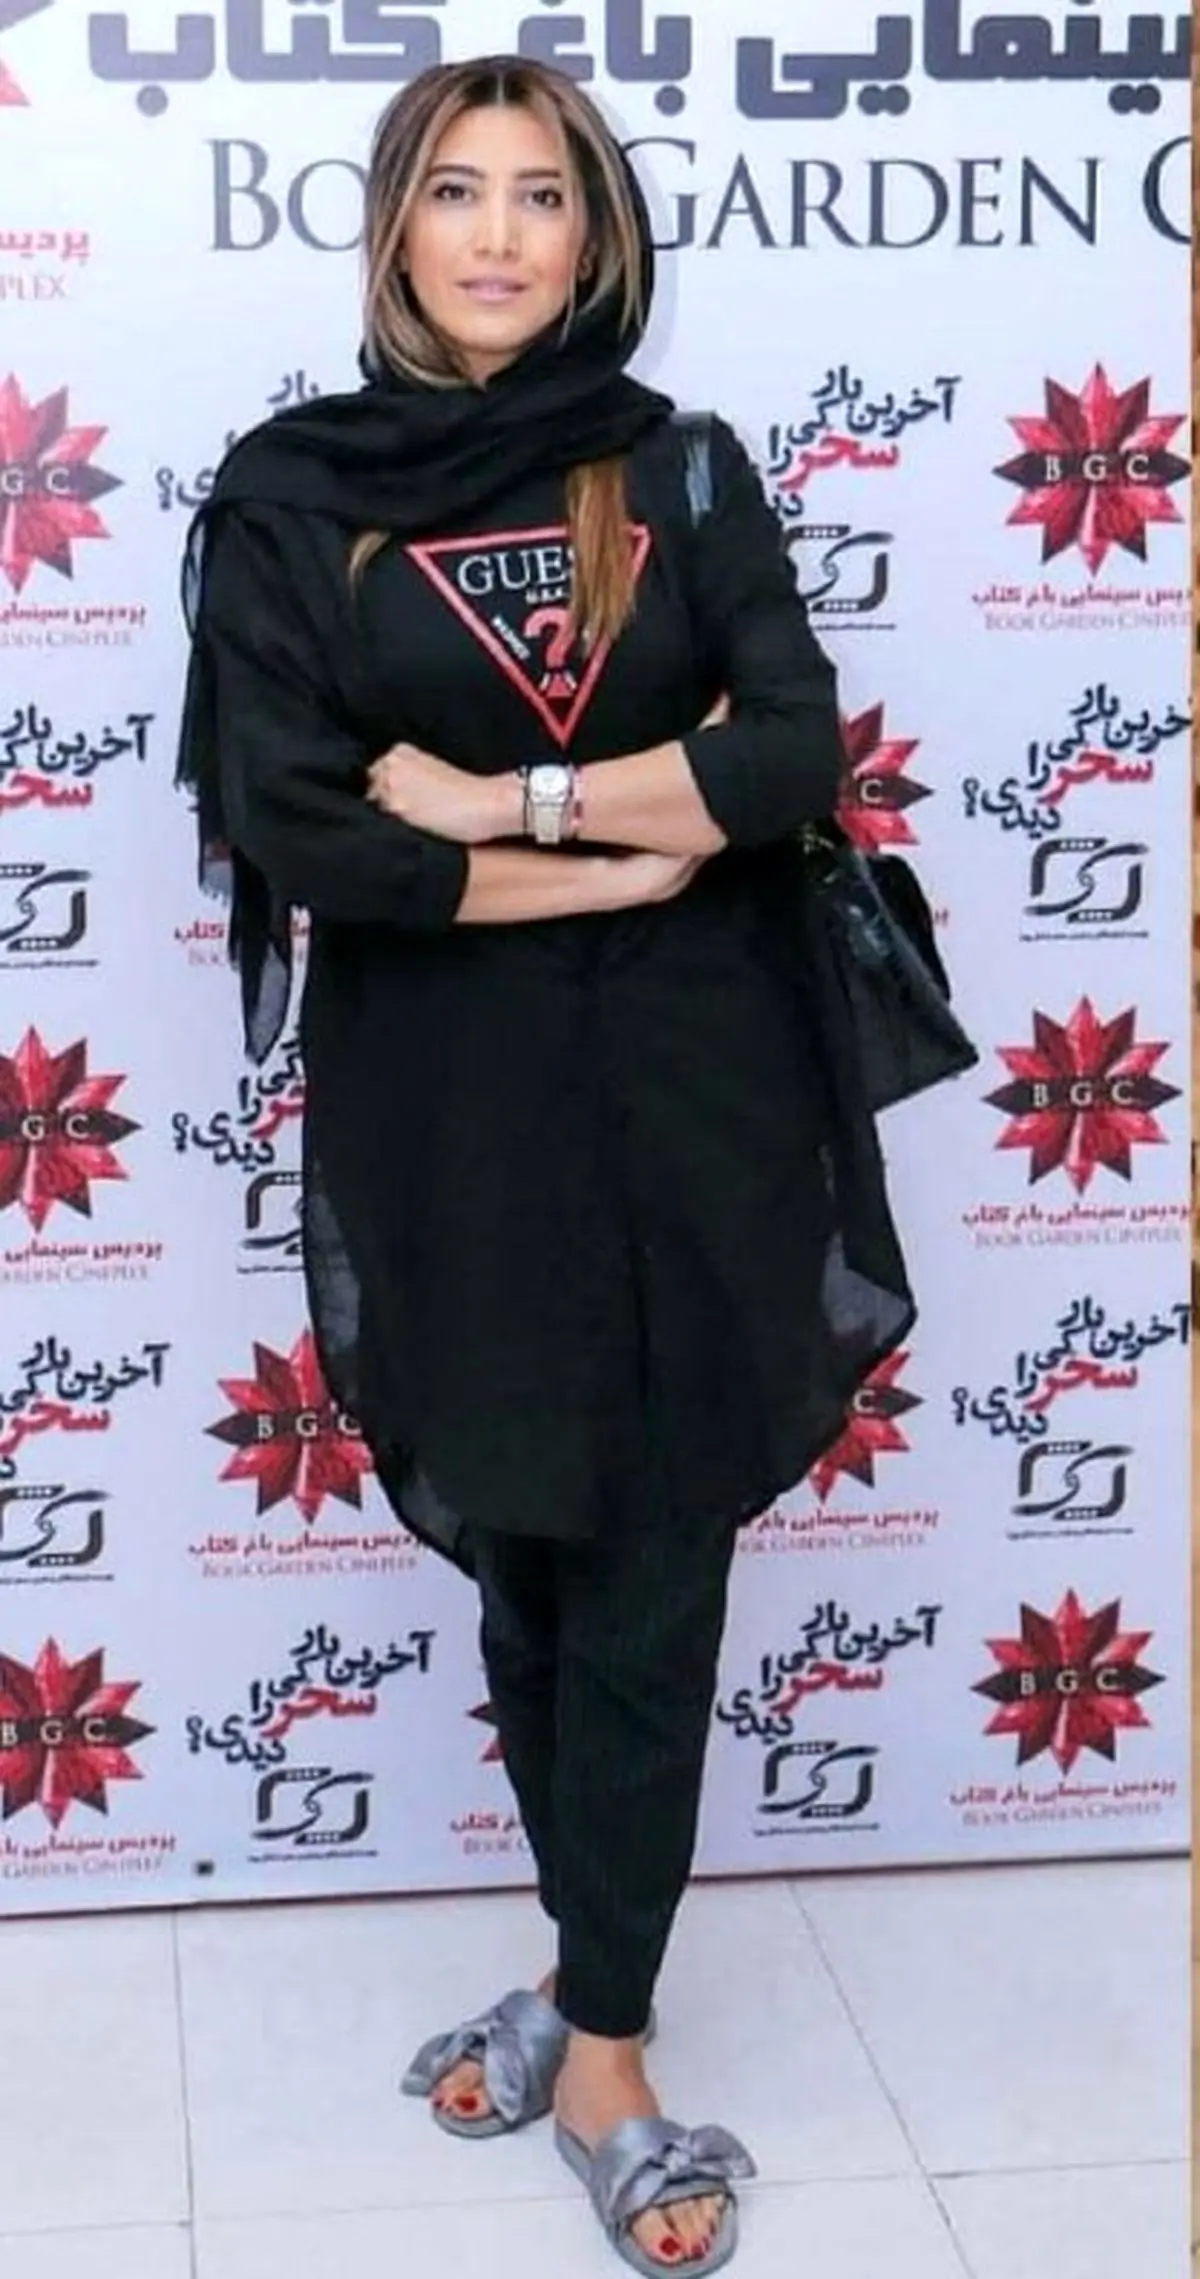 تیپ خانم بازیگر با دمپایی در یک مراسم خبرساز شد/عکس